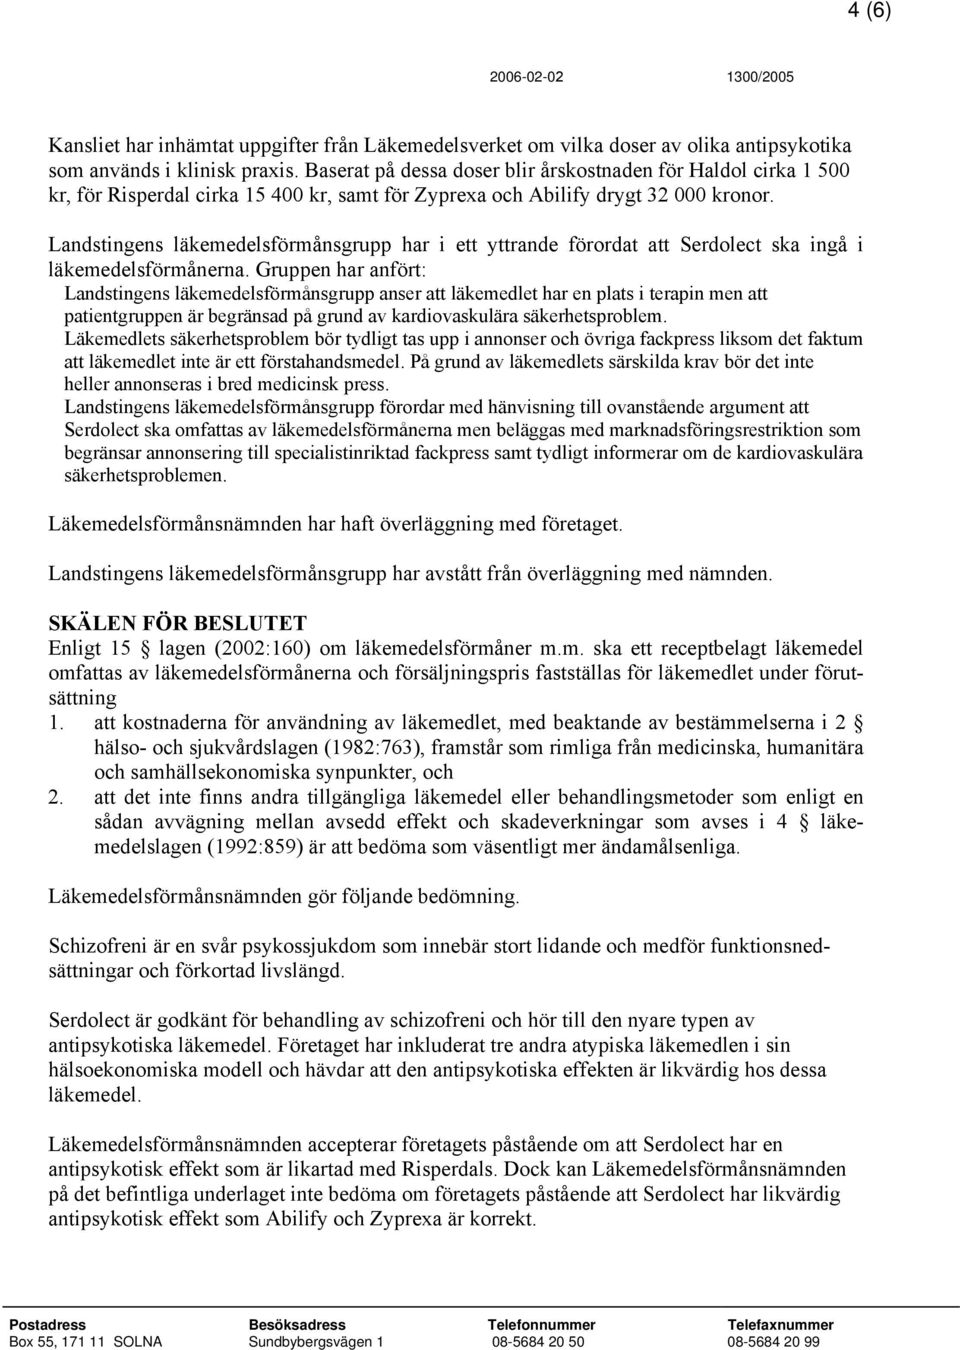 Landstingens läkemedelsförmånsgrupp har i ett yttrande förordat att Serdolect ska ingå i läkemedelsförmånerna.